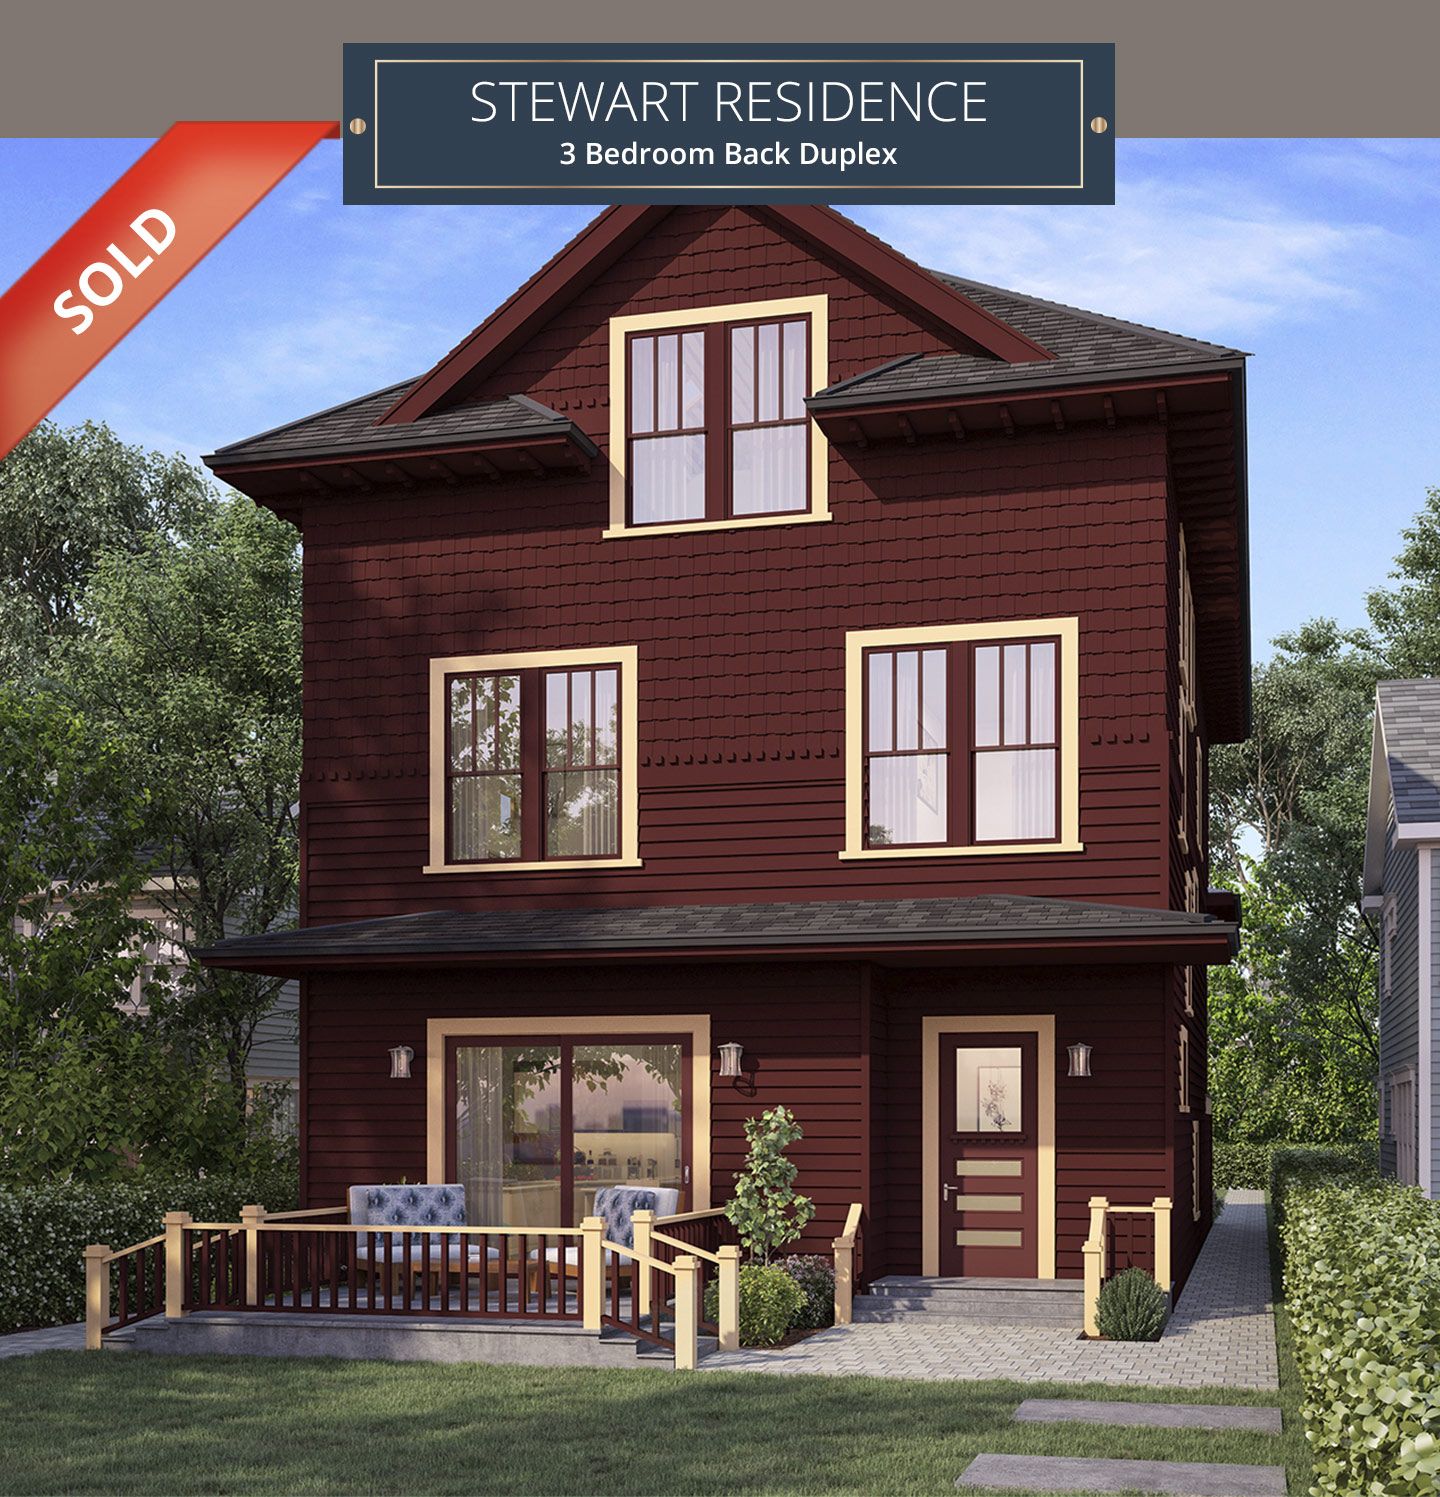 Stewart Residence